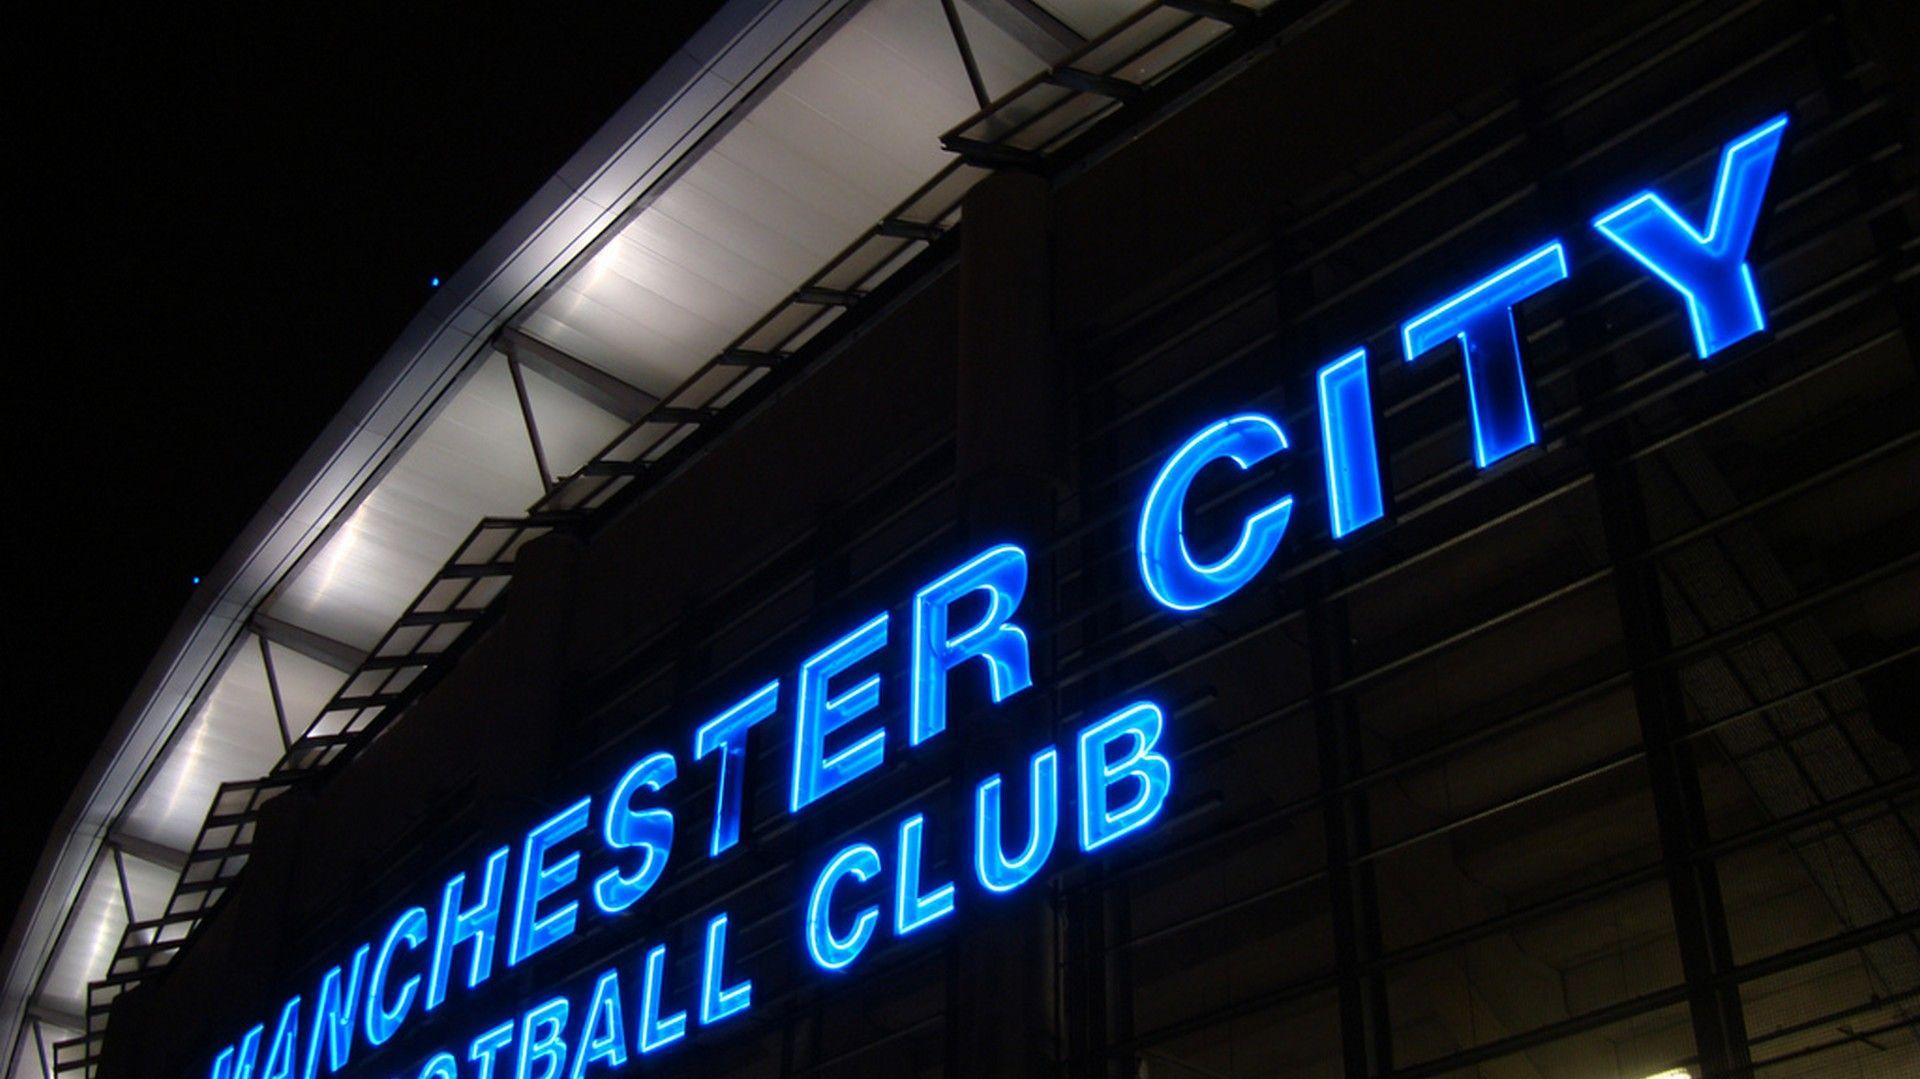 Manchester City HD Wallpapers Best Football Wallpaper HD